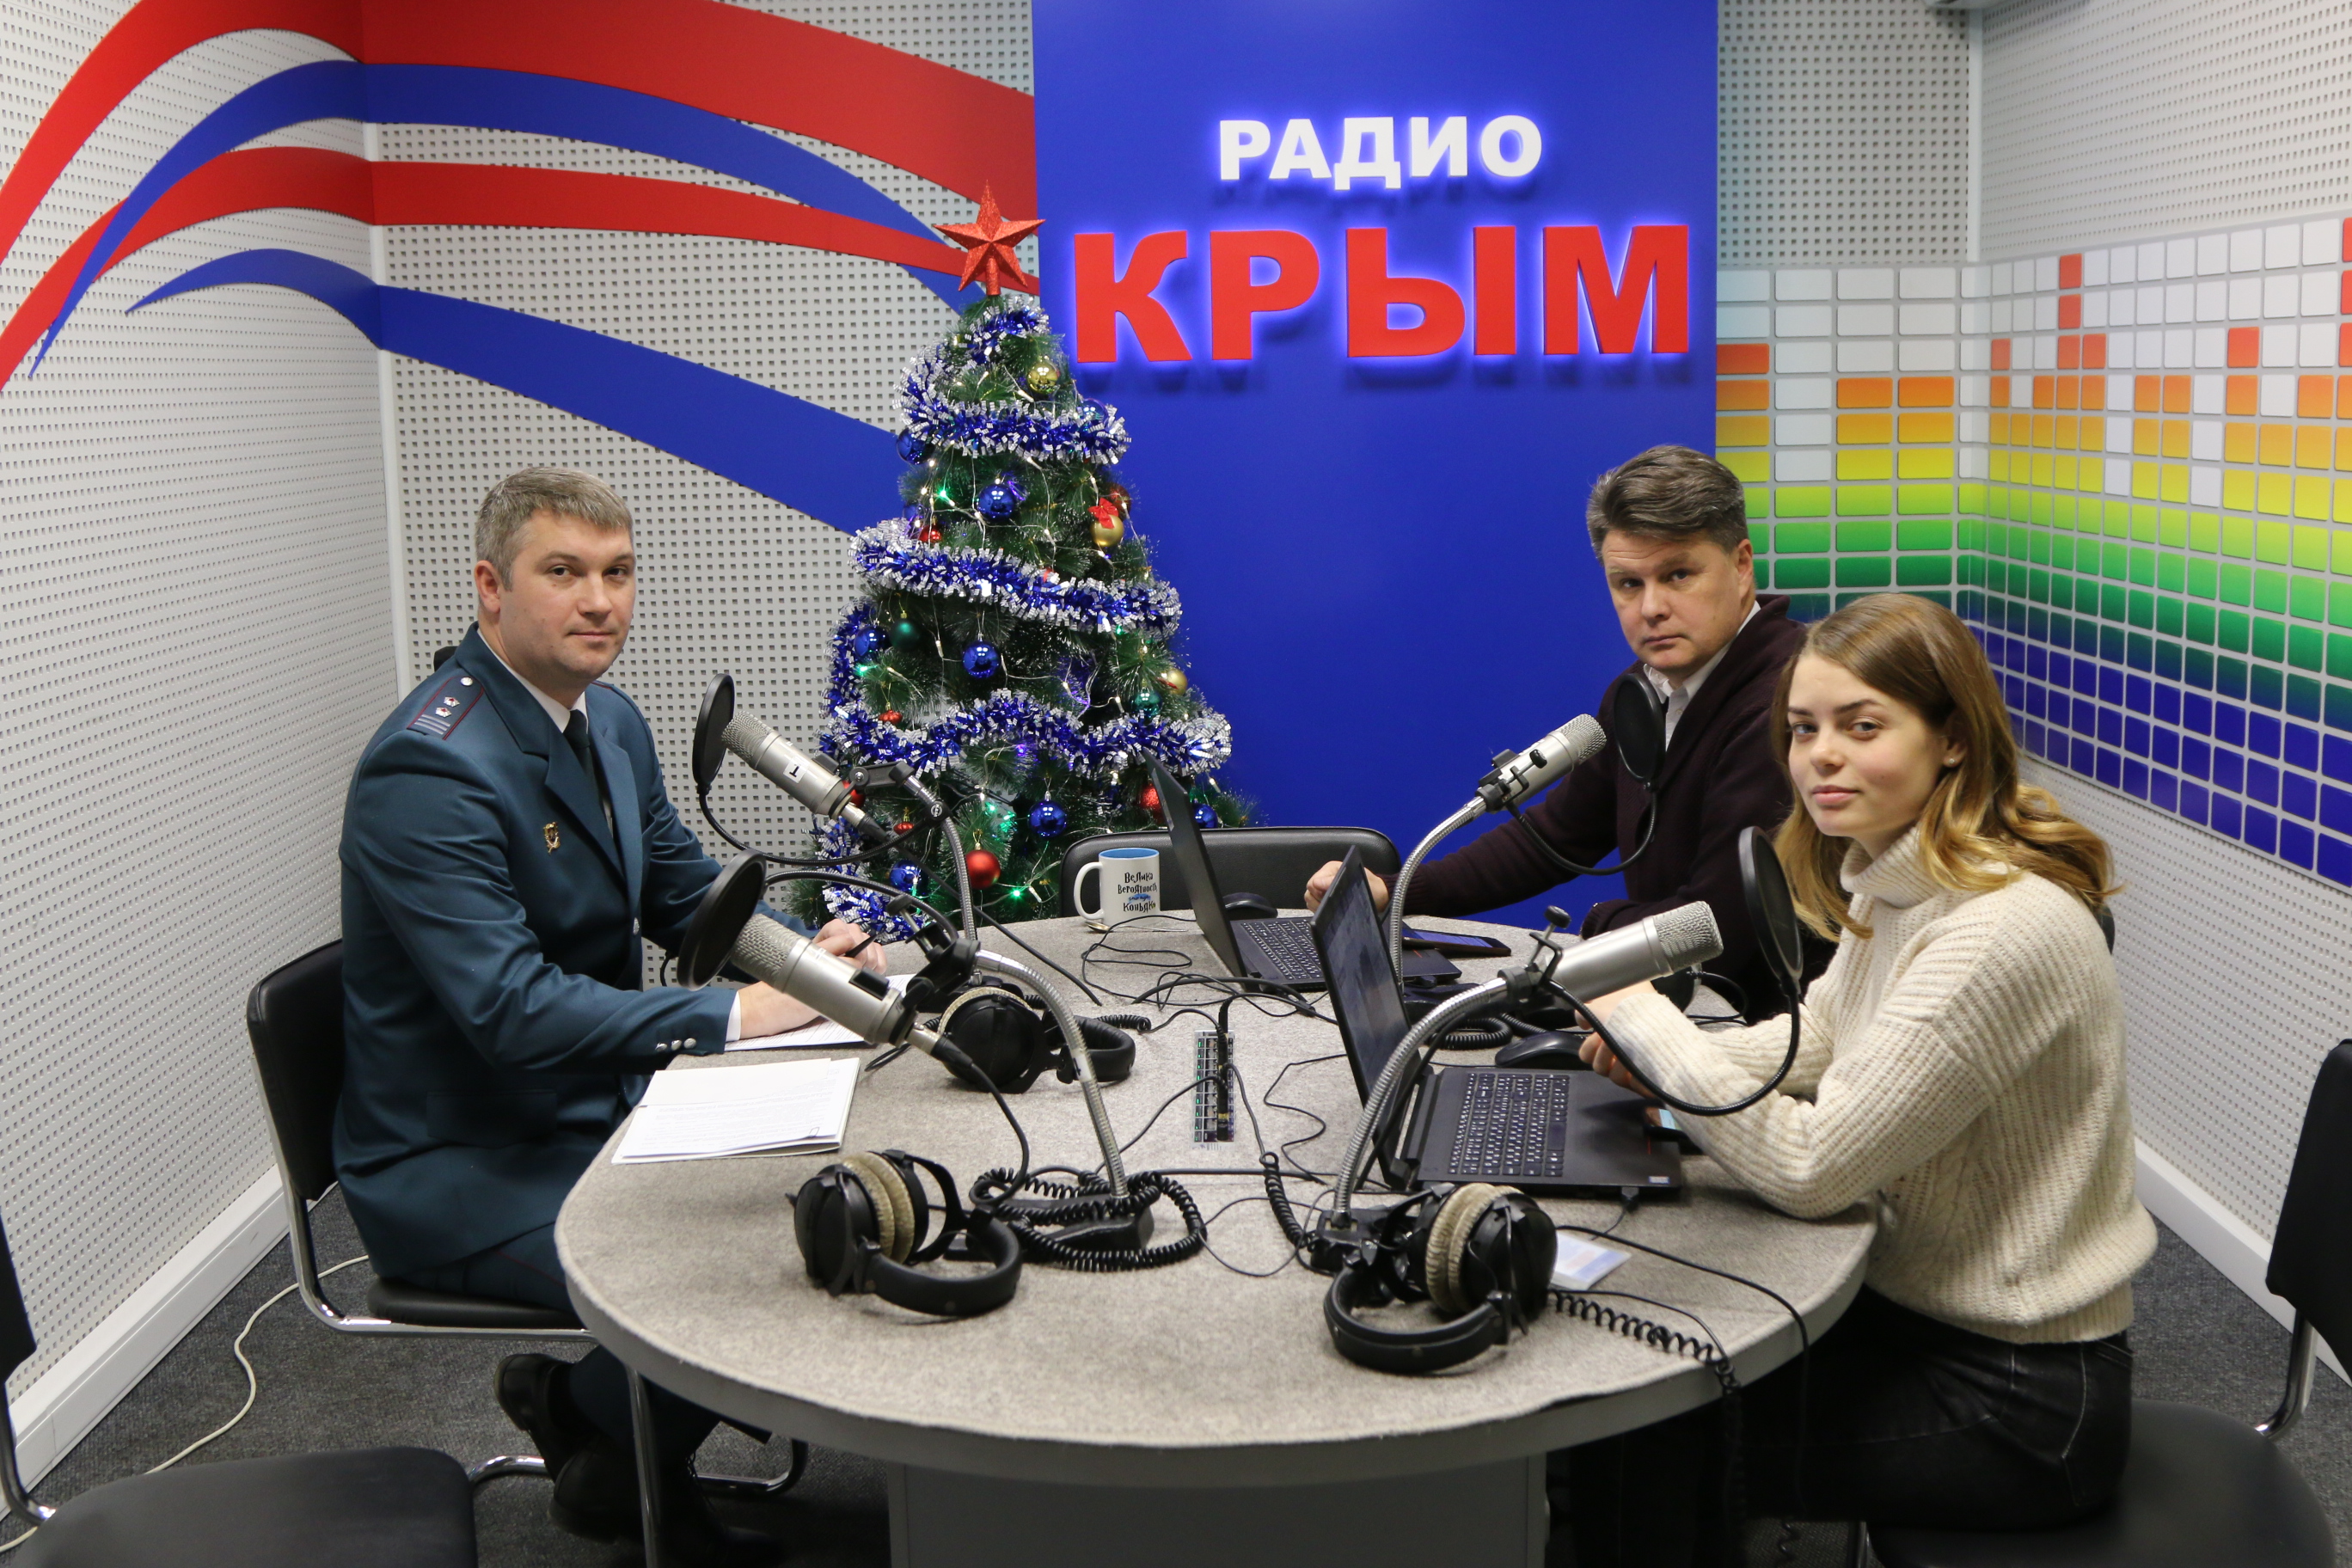 Сайт фнс крыма. Радио Крым. Ведущие МВ радио. Радио Крым телефон прямого эфира.